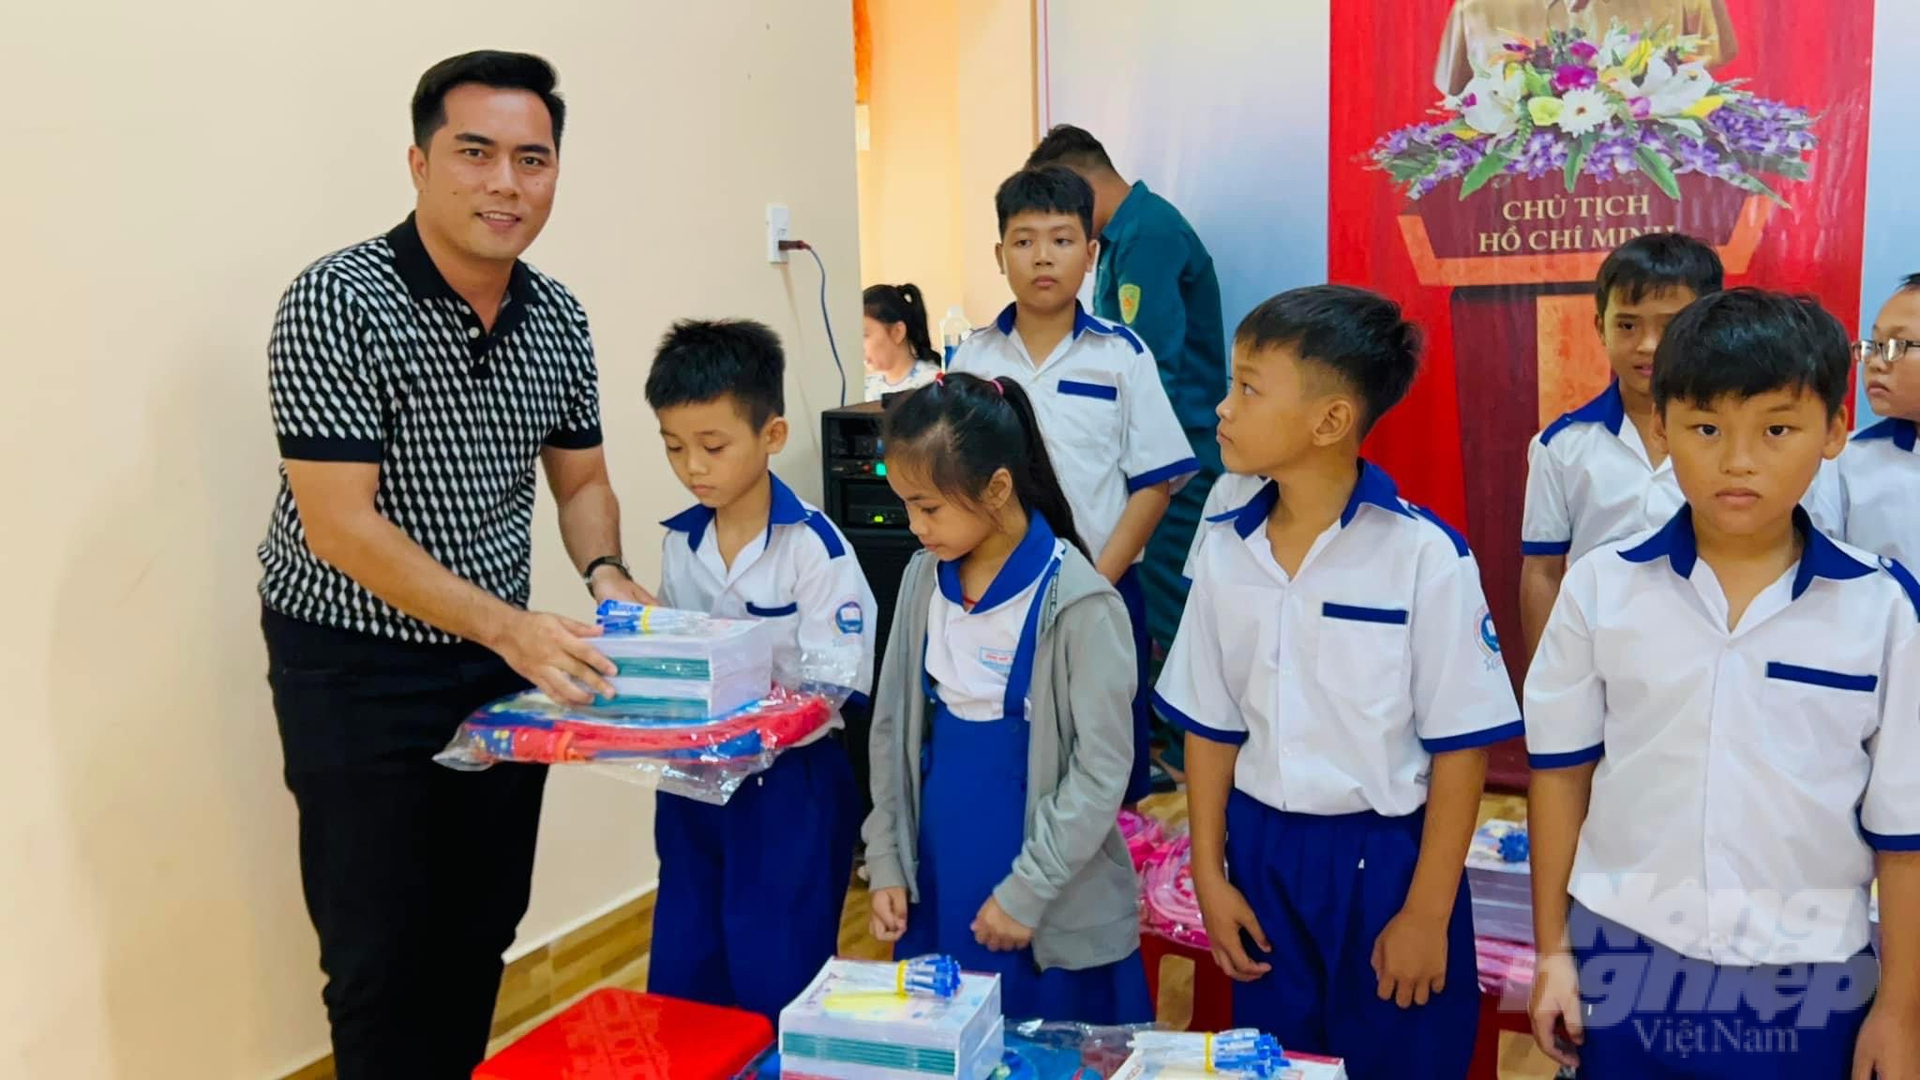 Ông Nguyễn Chí Thiện, đại diện Công ty Mỹ phẩm Đông Anh trao dụng cụ học tập cho các em học sinh. Ảnh: Trọng Linh.